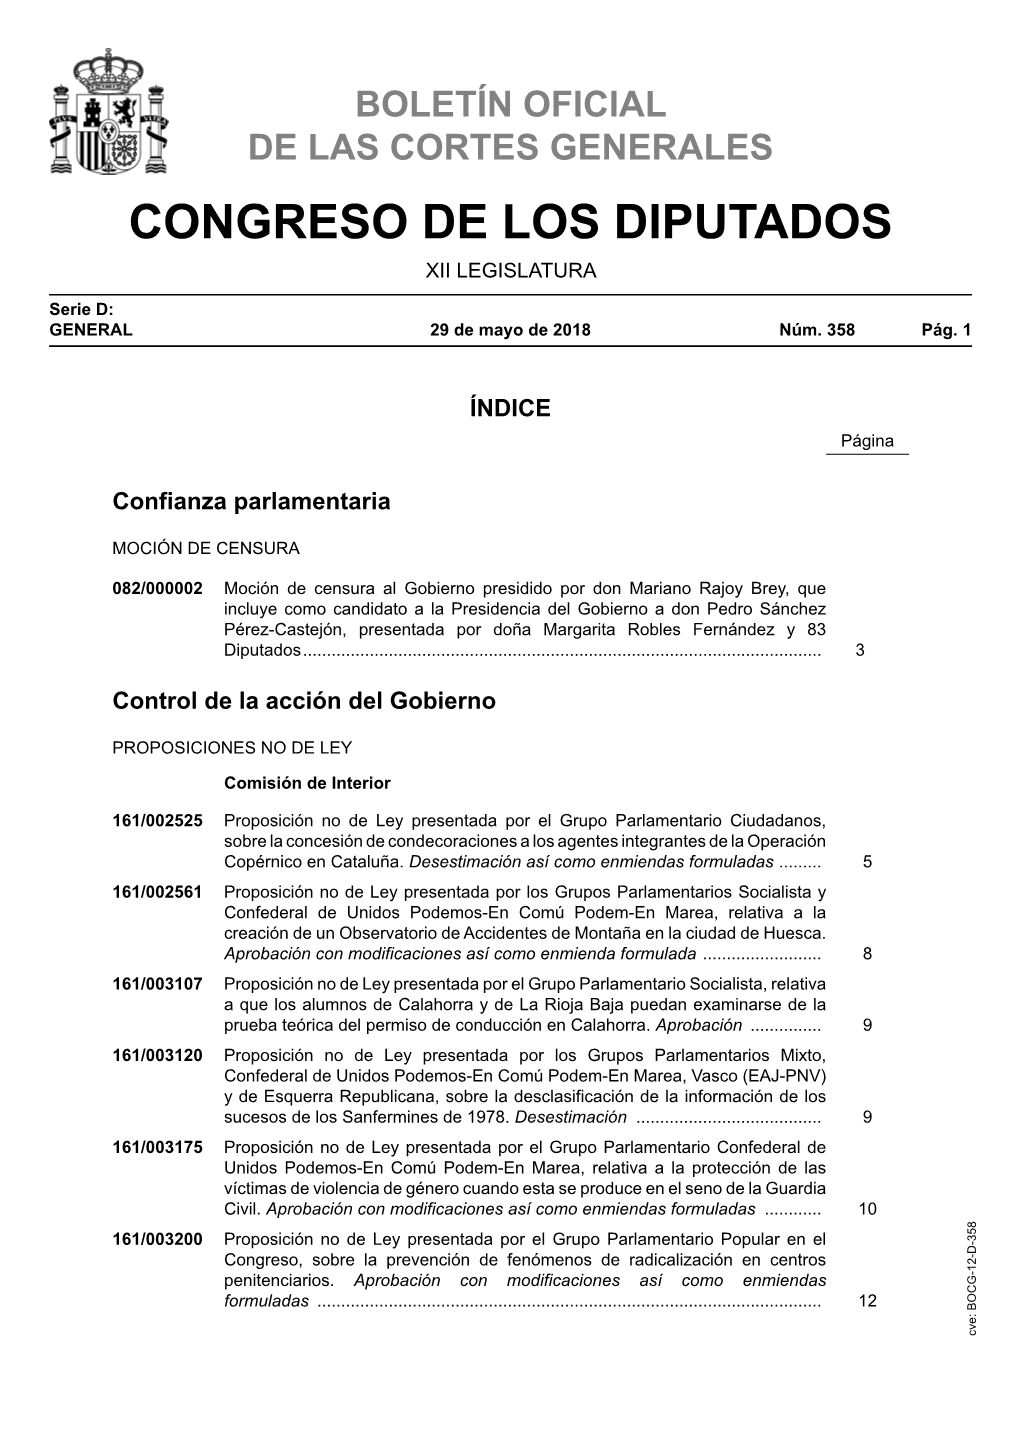 Boletín Oficial De Las Cortes Generales Serie D: General